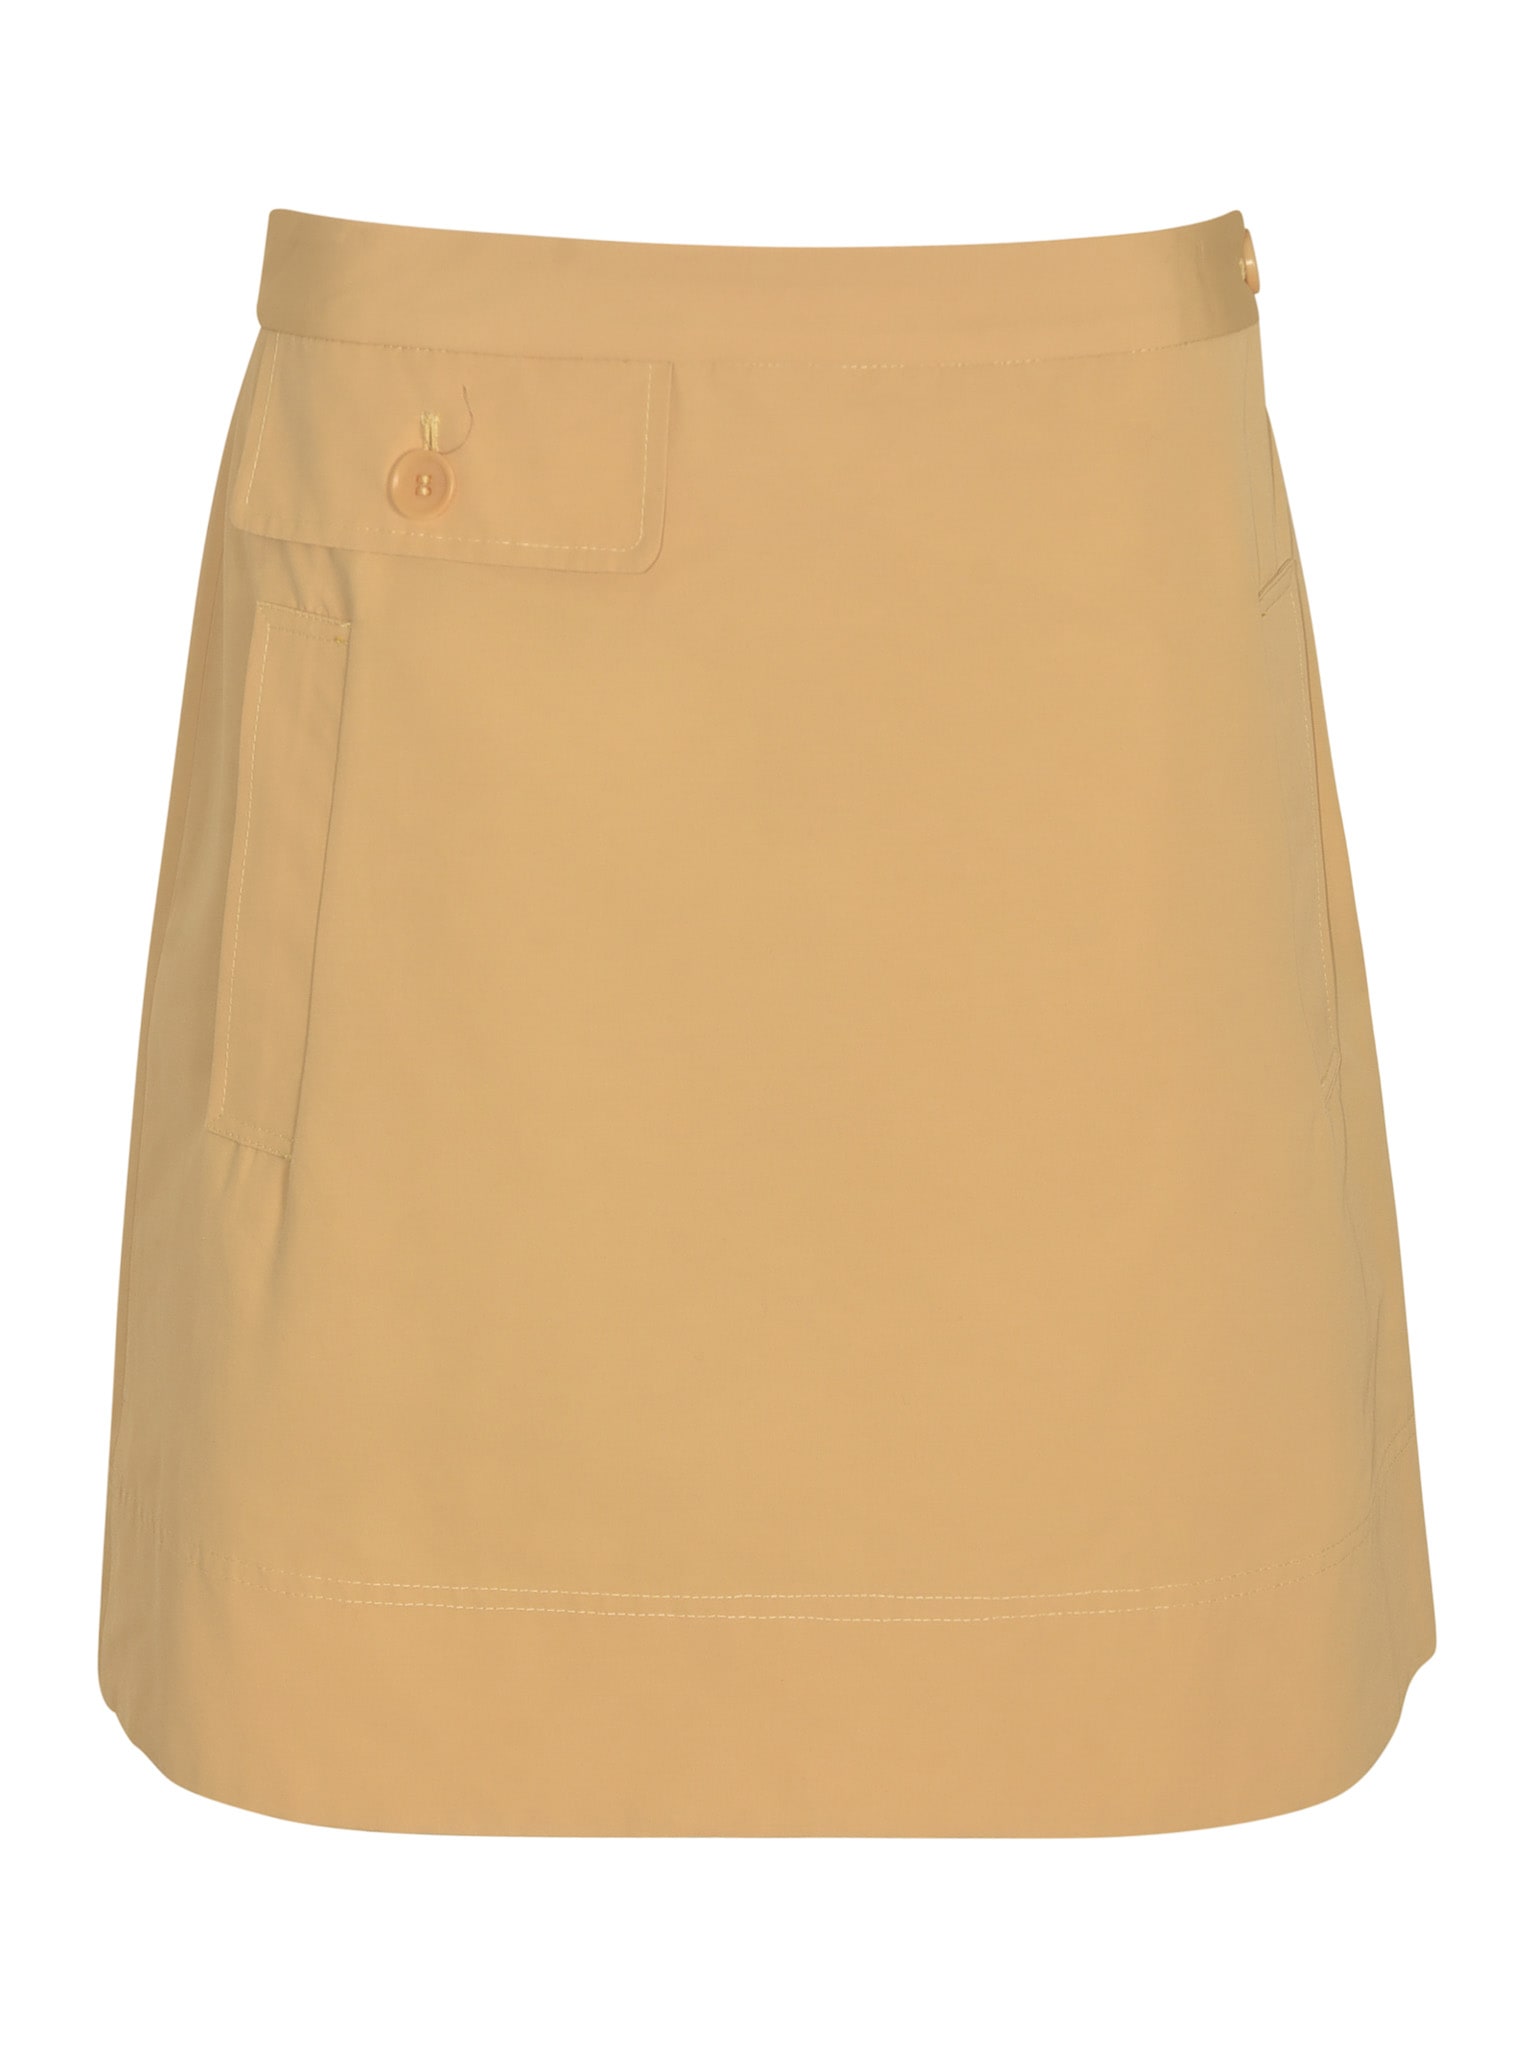 Buttoned Pocket Short Plain Skirt